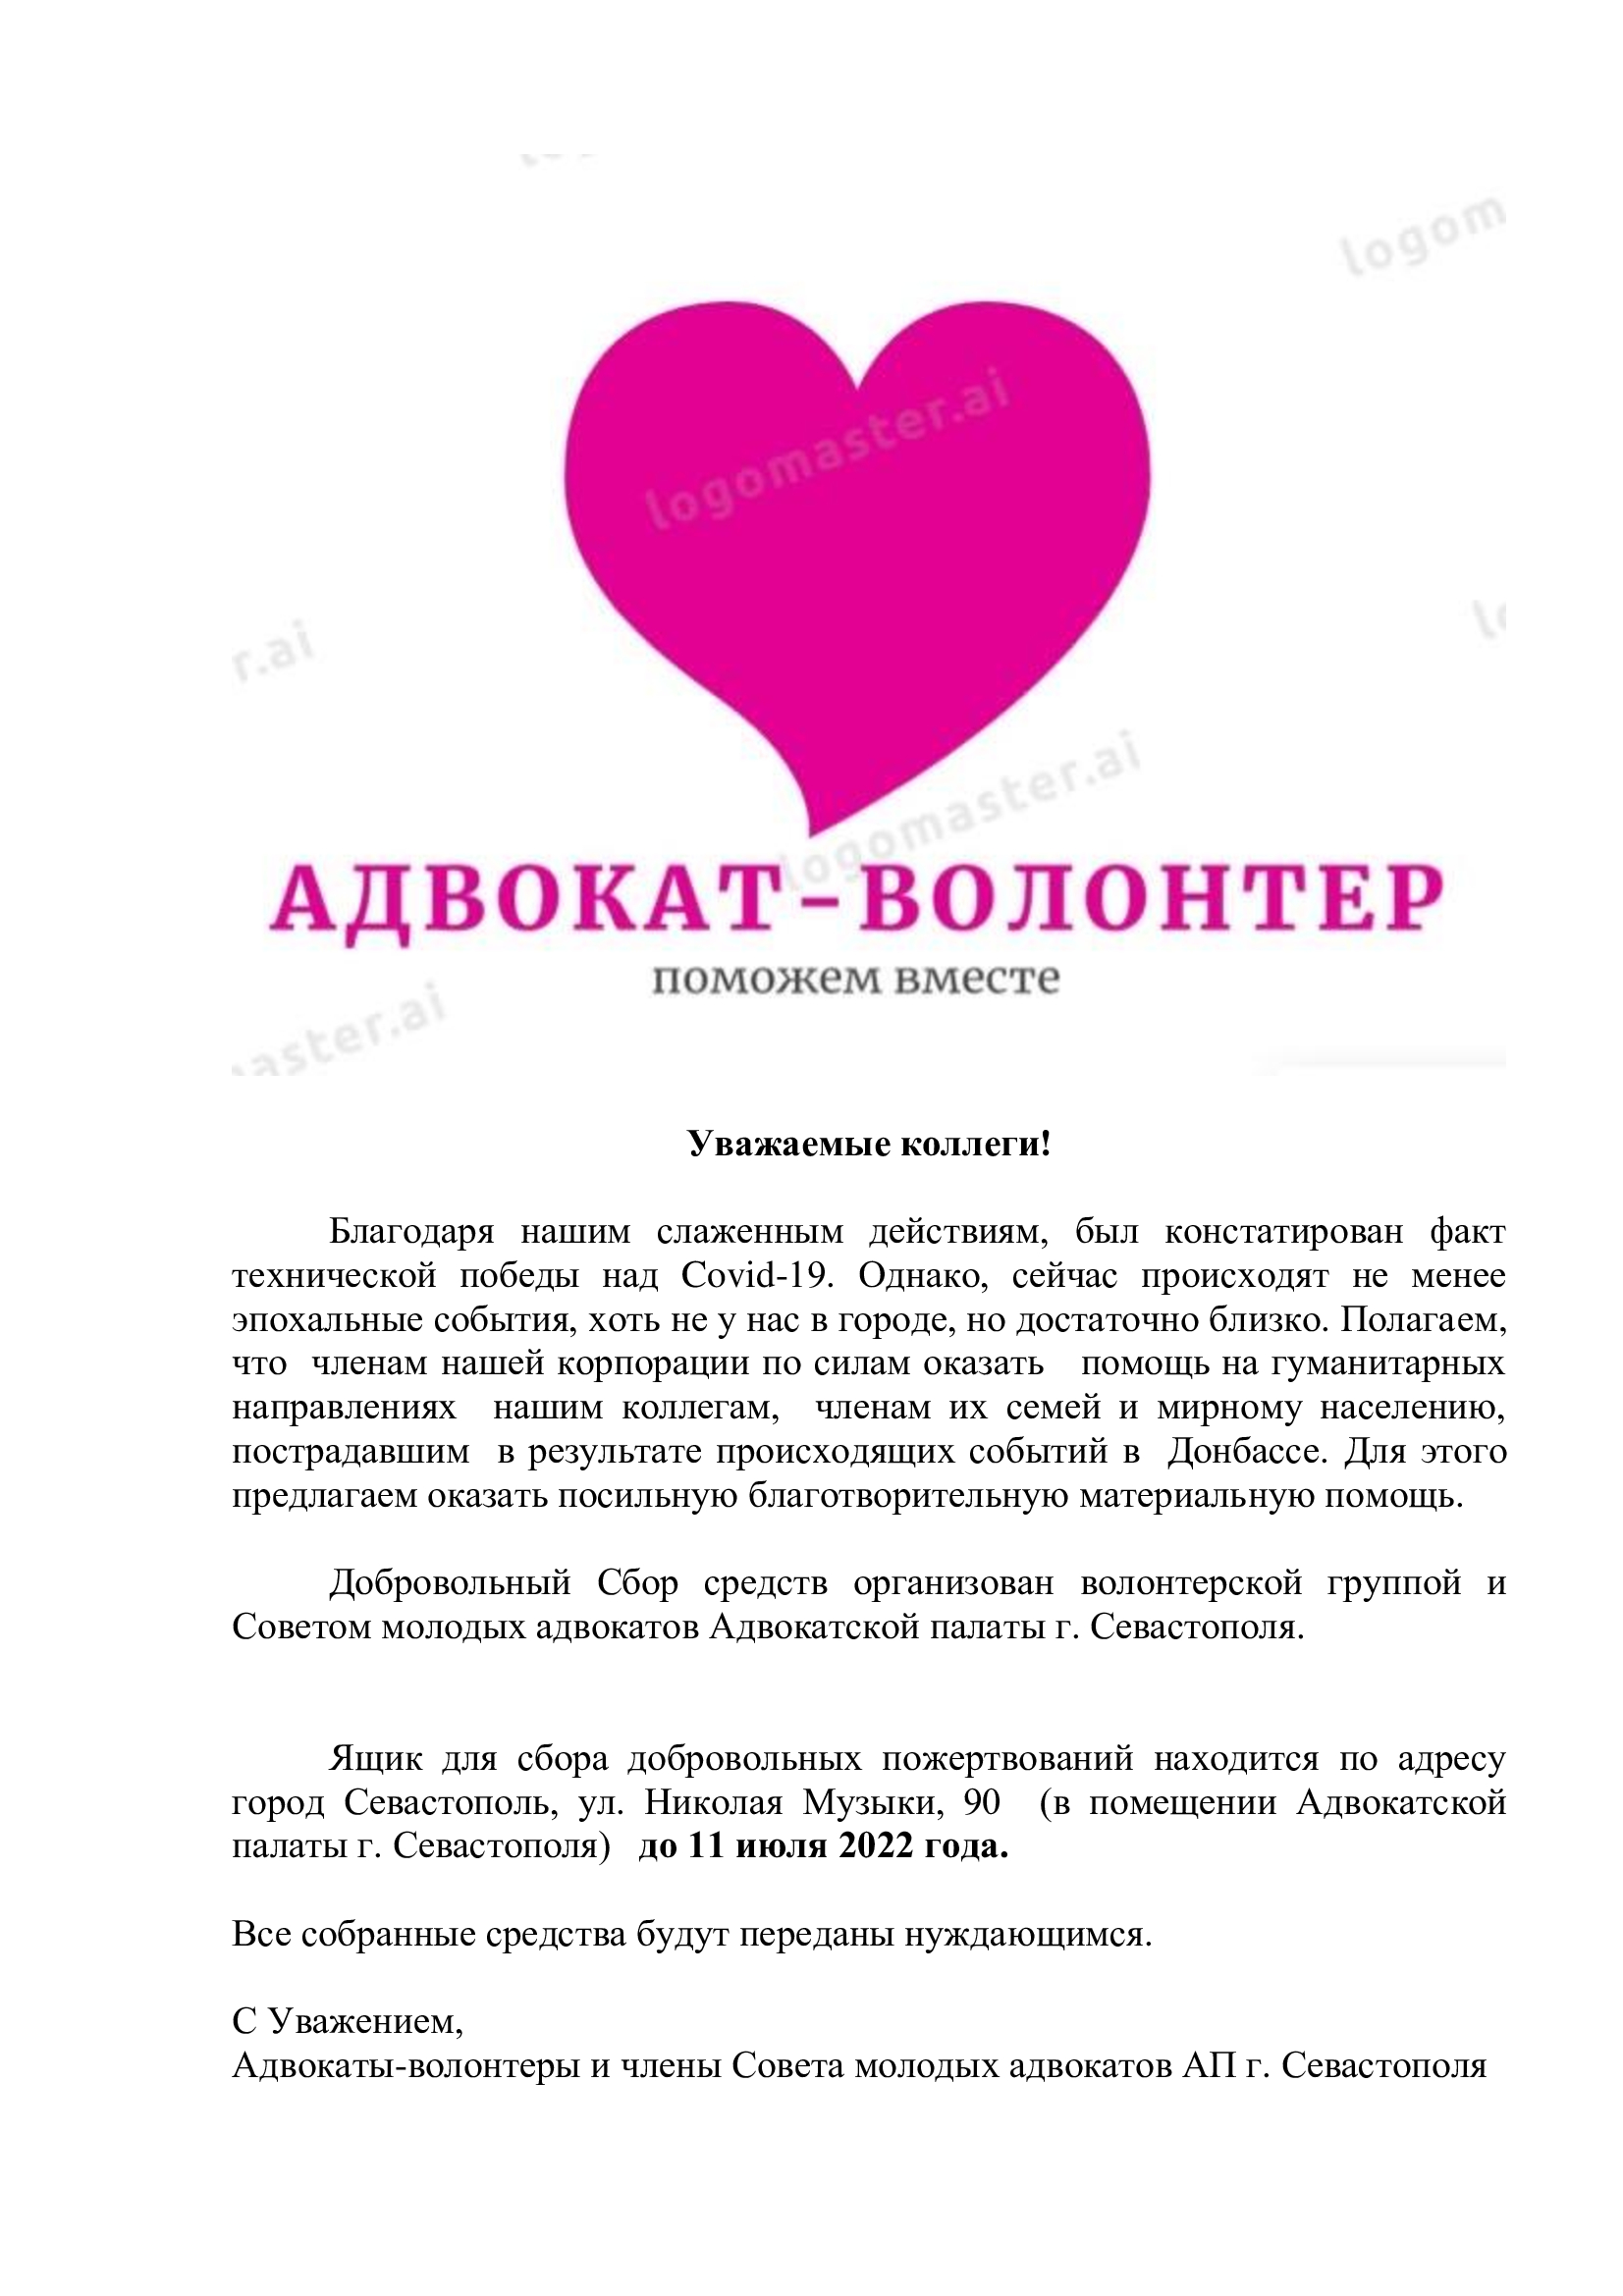 Волонтерская помощь от адвокатов Севастополя